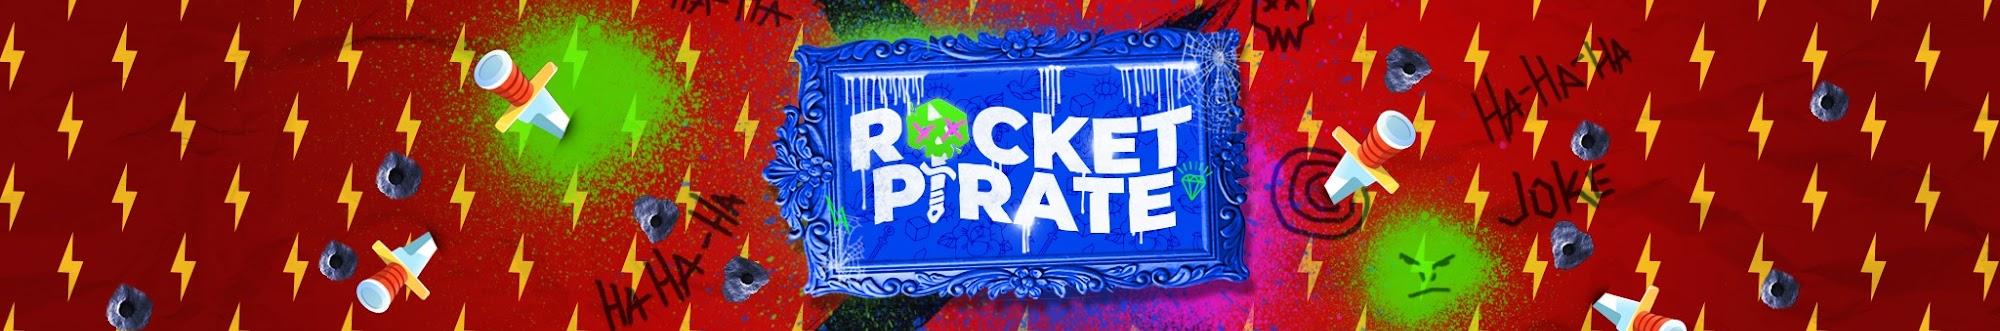 Rocket Pirate